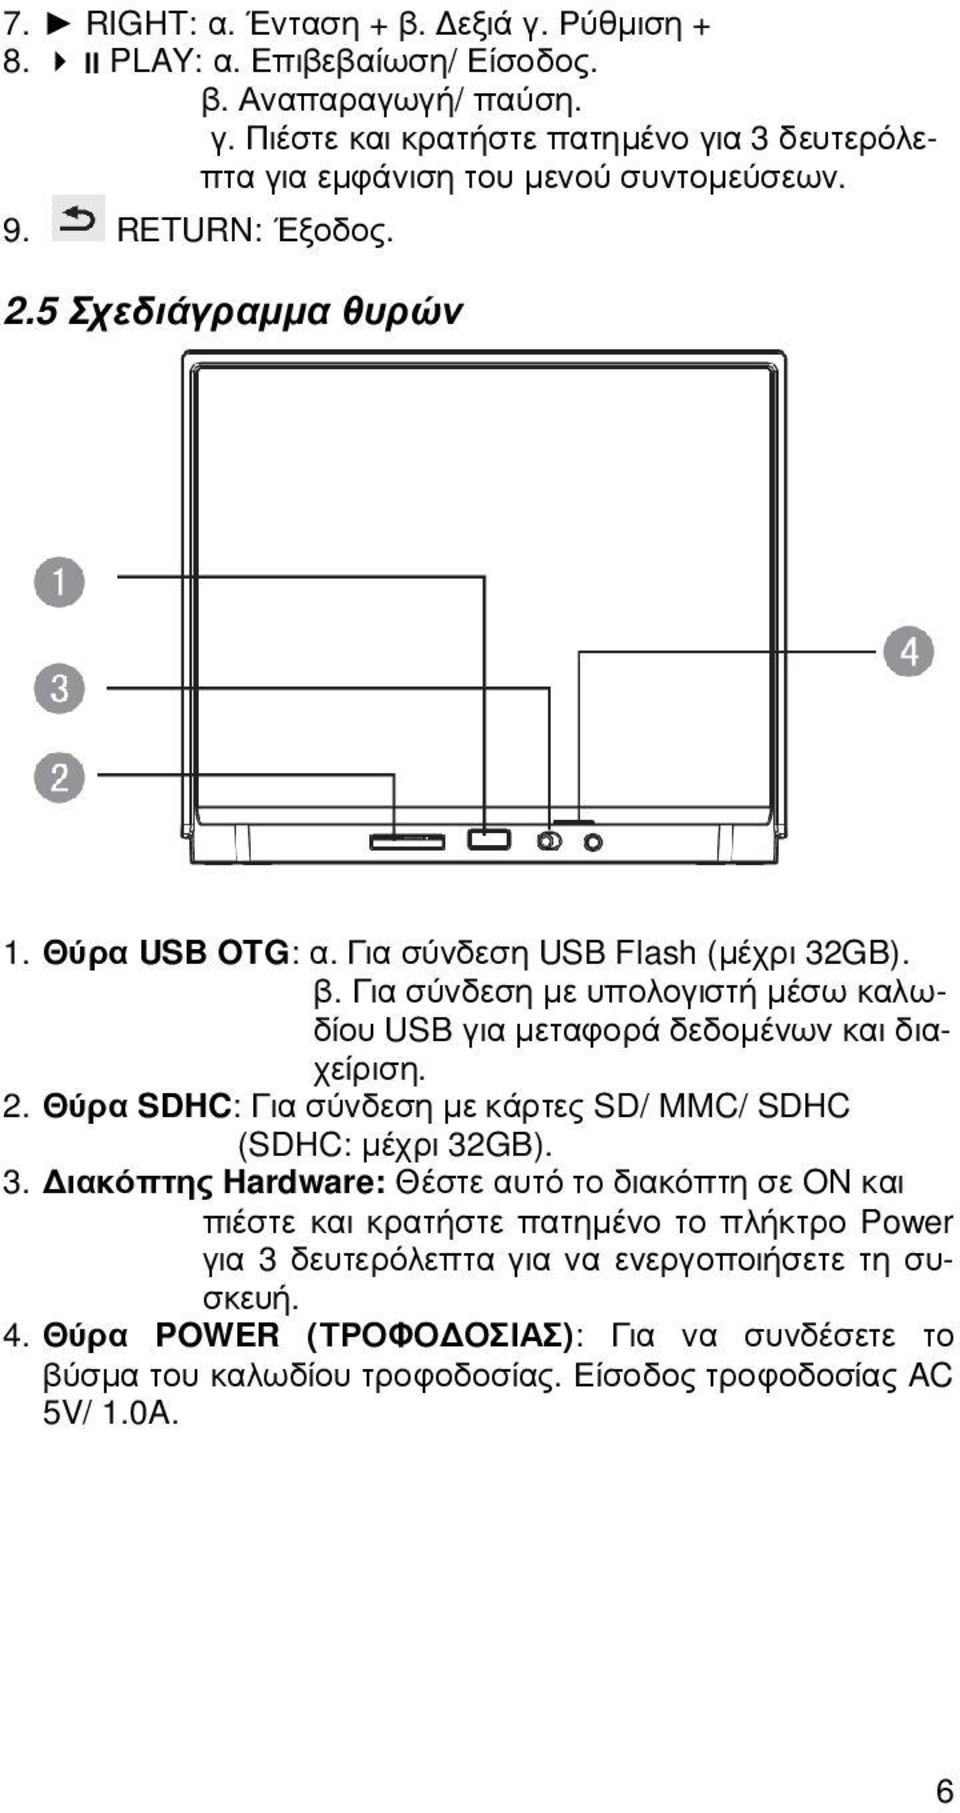 Για σύνδεση µε υπολογιστή µέσω καλωδίου USB για µεταφορά δεδοµένων και διαχείριση. 2. Θύρα SDHC: Για σύνδεση µε κάρτες SD/ MMC/ SDHC (SDHC: µέχρι 32